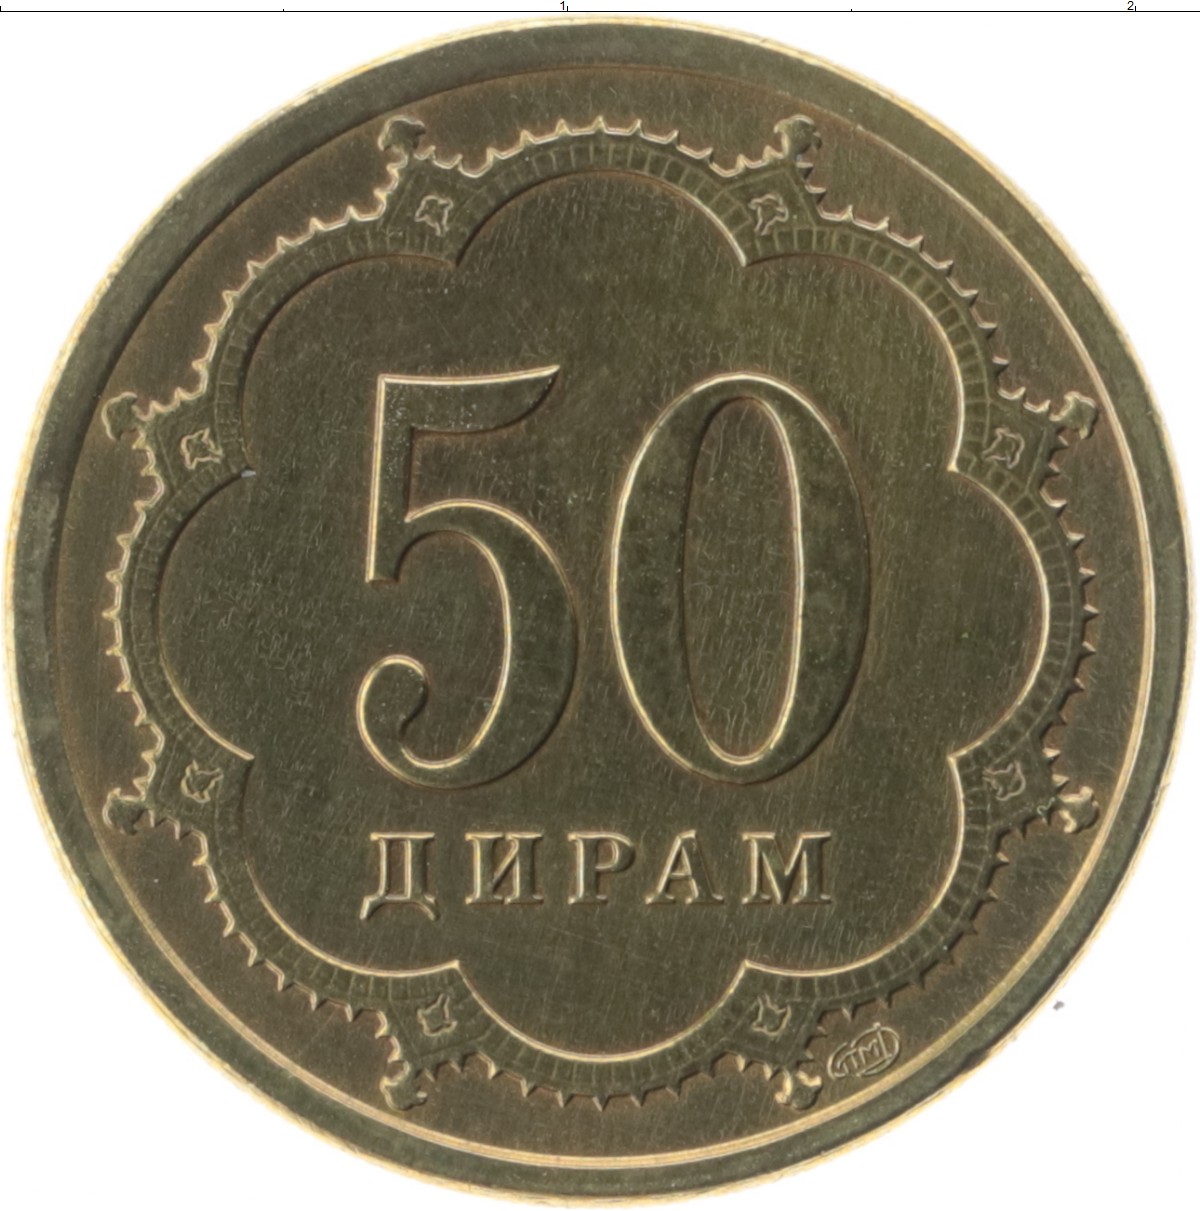 50 дирам сколько в рублях. Шлифовальный круг на липучке ЗУБР 35562-125-600 125 мм 5 шт. 20 Копеек 1949. Монеты Румыния 50 bani 2014. Великобритания 1/2 пенни 1964 год.